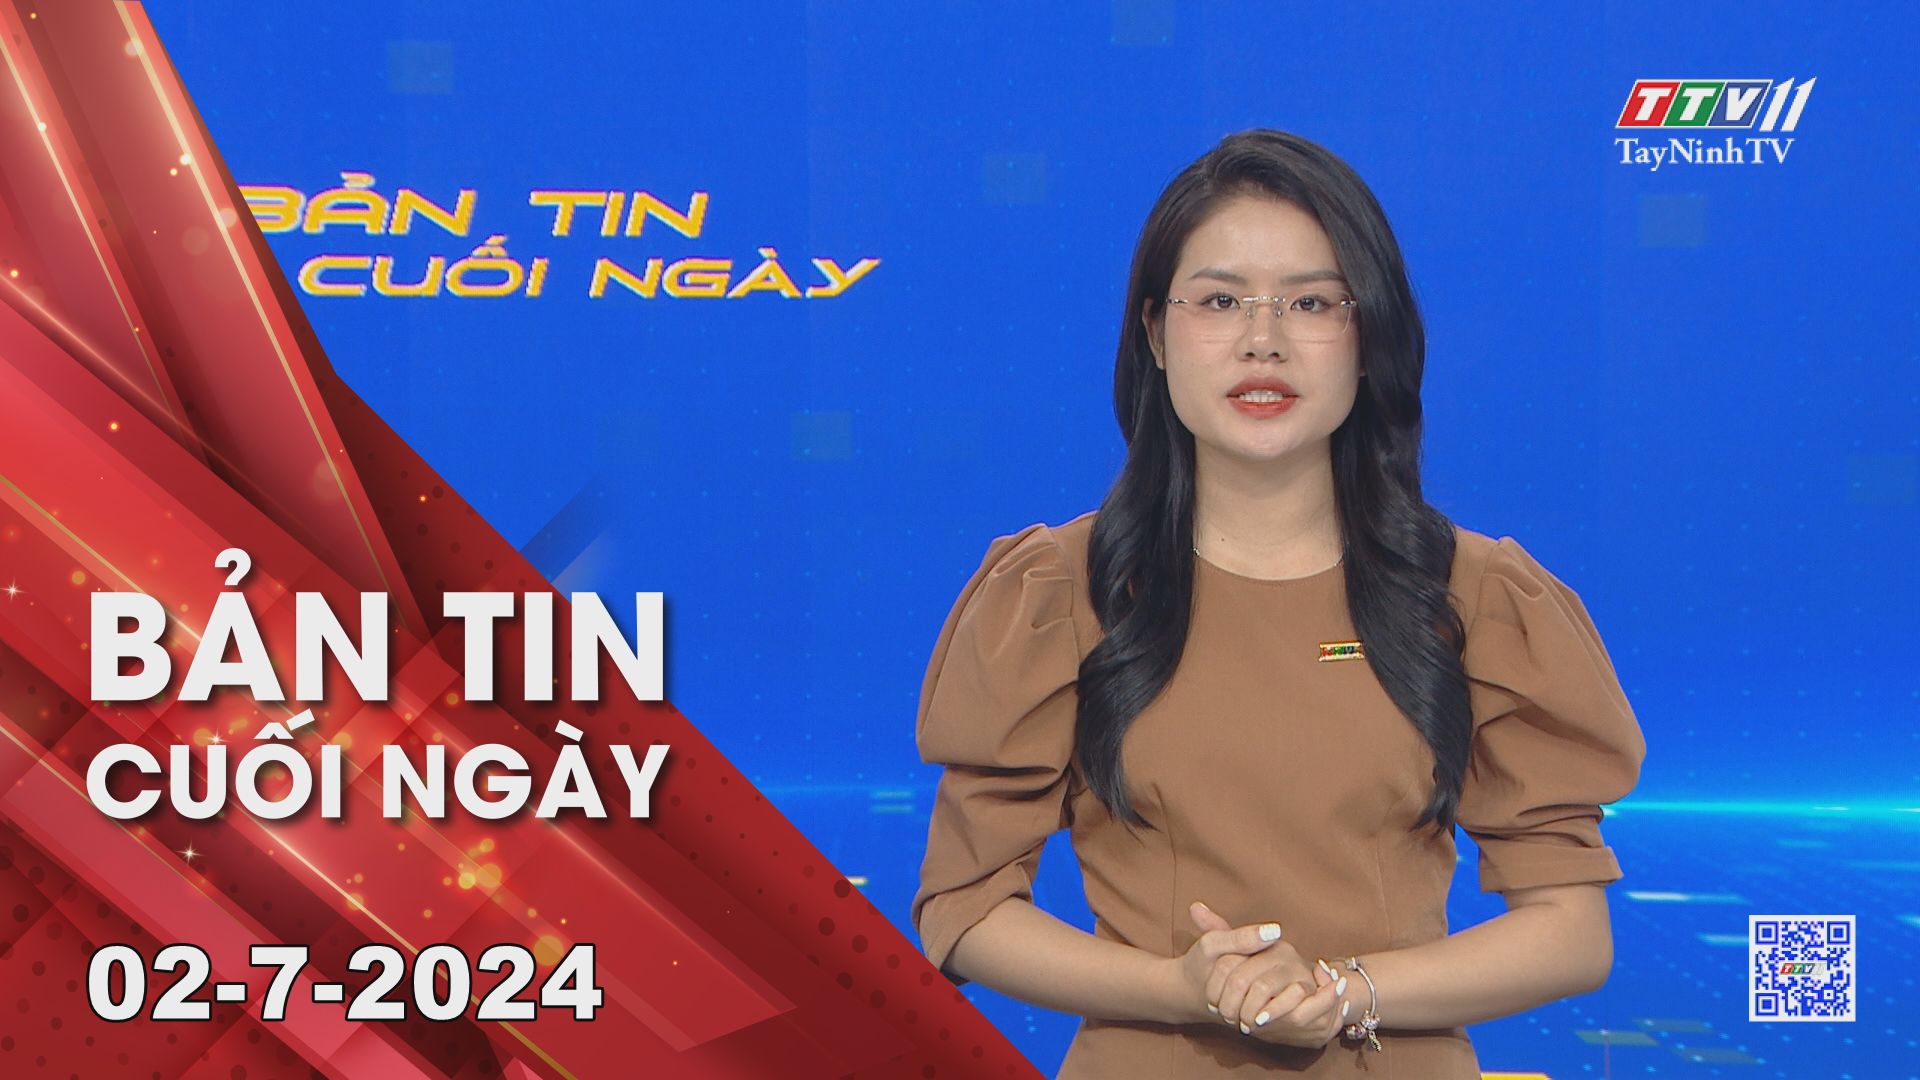 Bản tin cuối ngày 02-7-2024 | Tin tức hôm nay | TayNinhTV